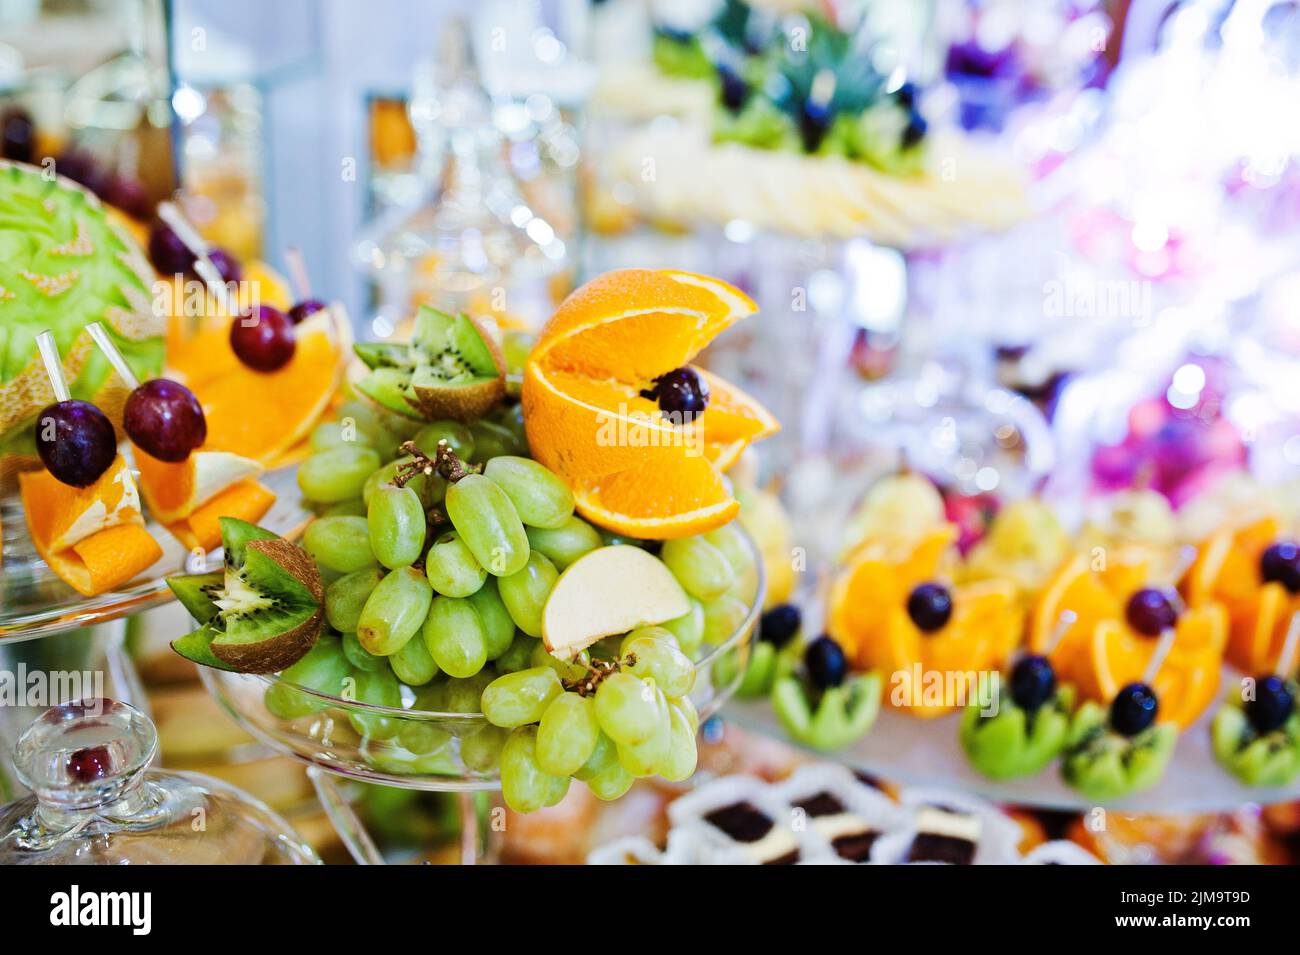 Table de réception de mariage élégance avec de la nourriture et le décor. Raisin blanc, orange et autres fruits Banque D'Images